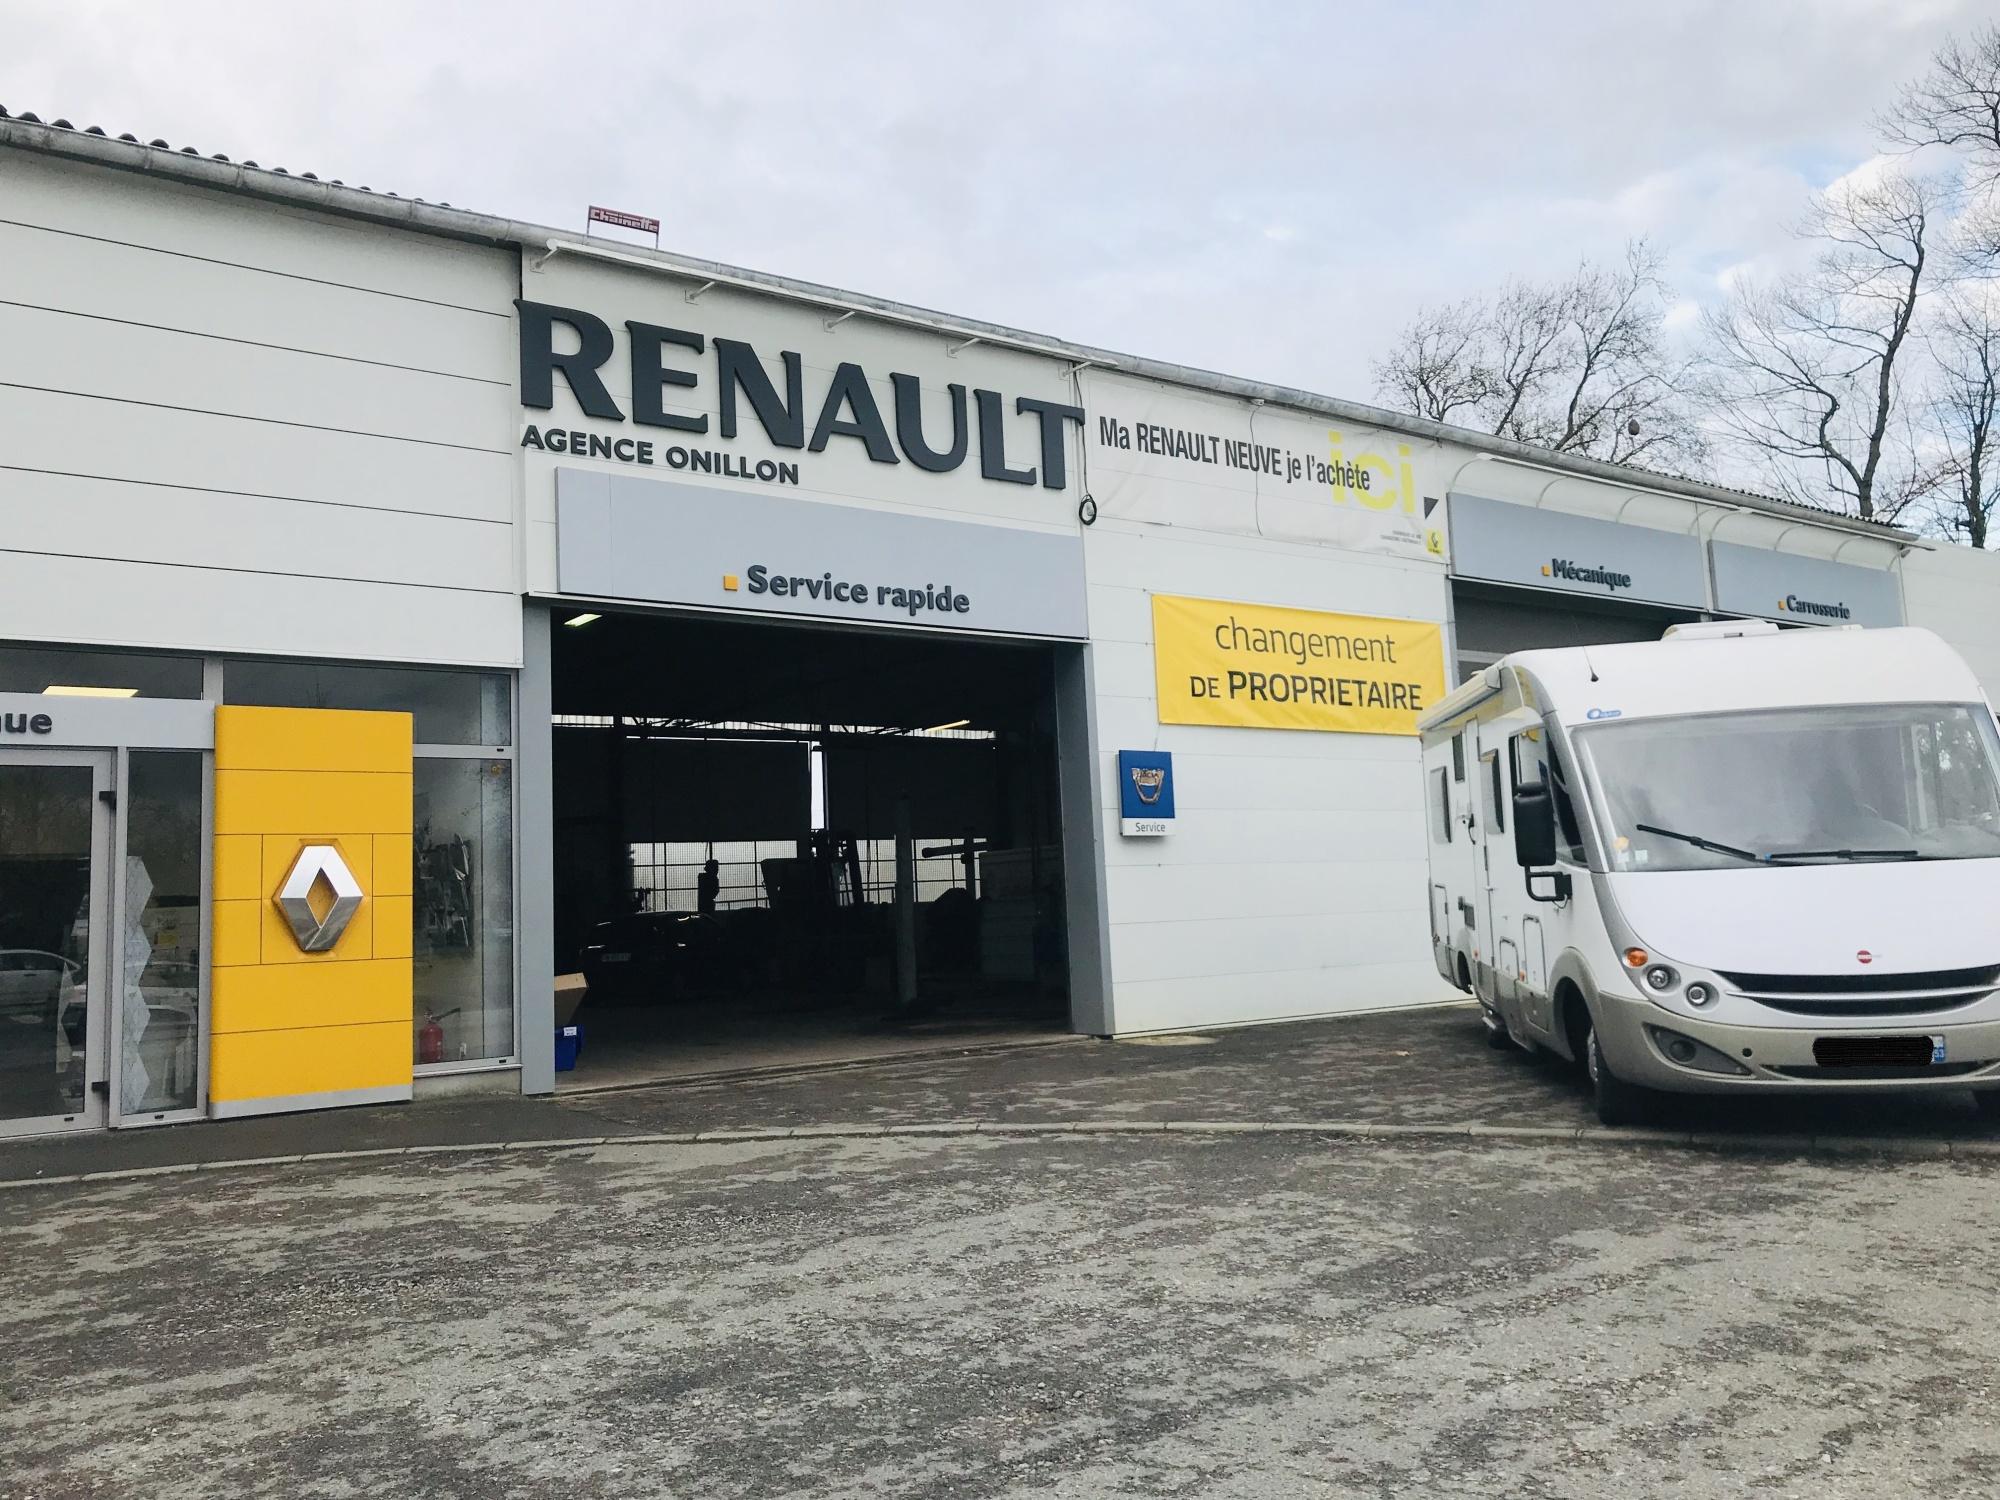 Garage Renault Nla Automobiles Nueil Les Aubiers